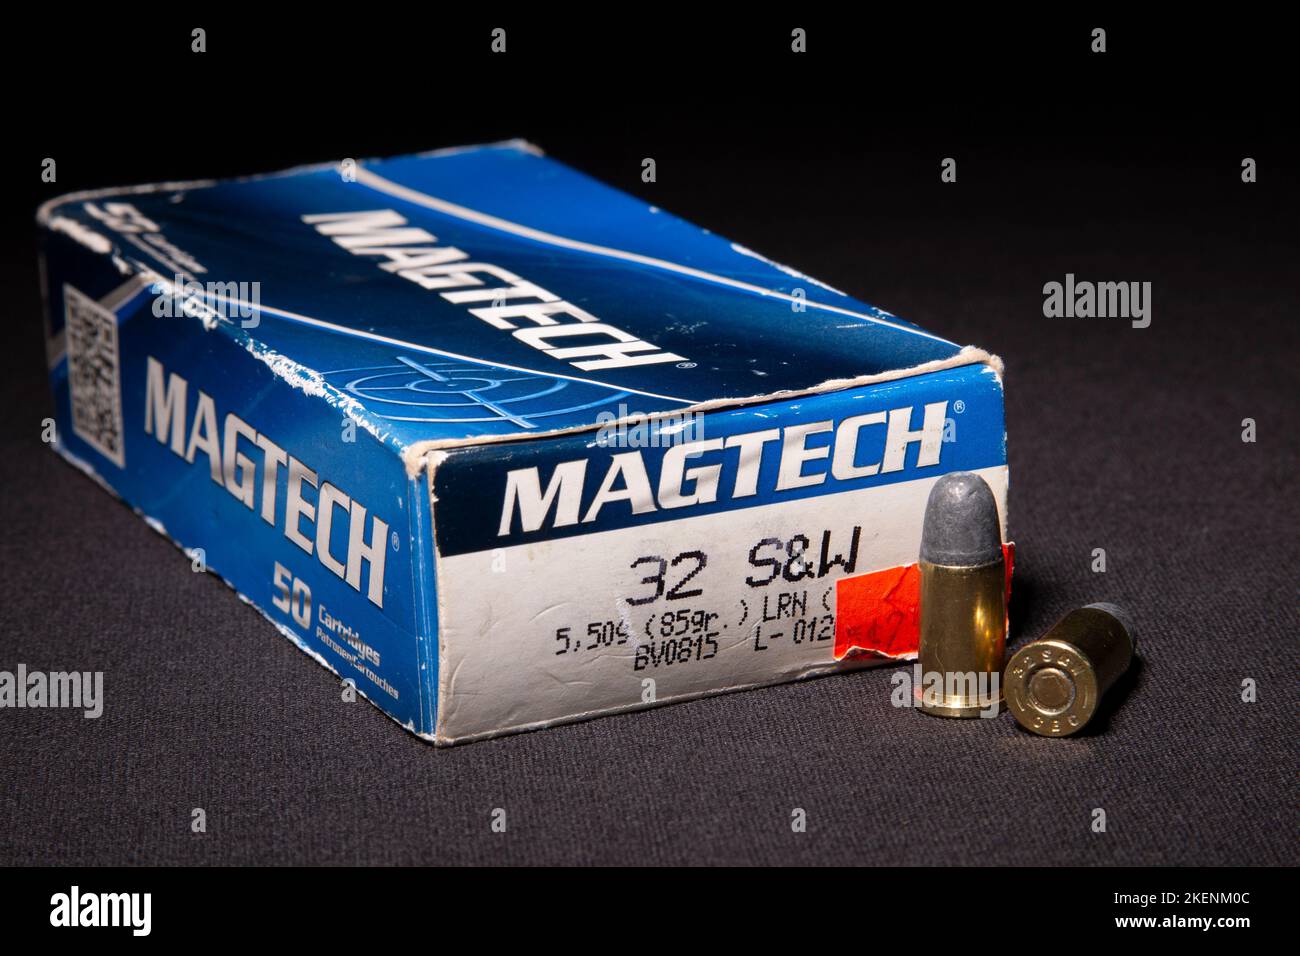 Magtech 32 S&W Ammunition Stock Photo